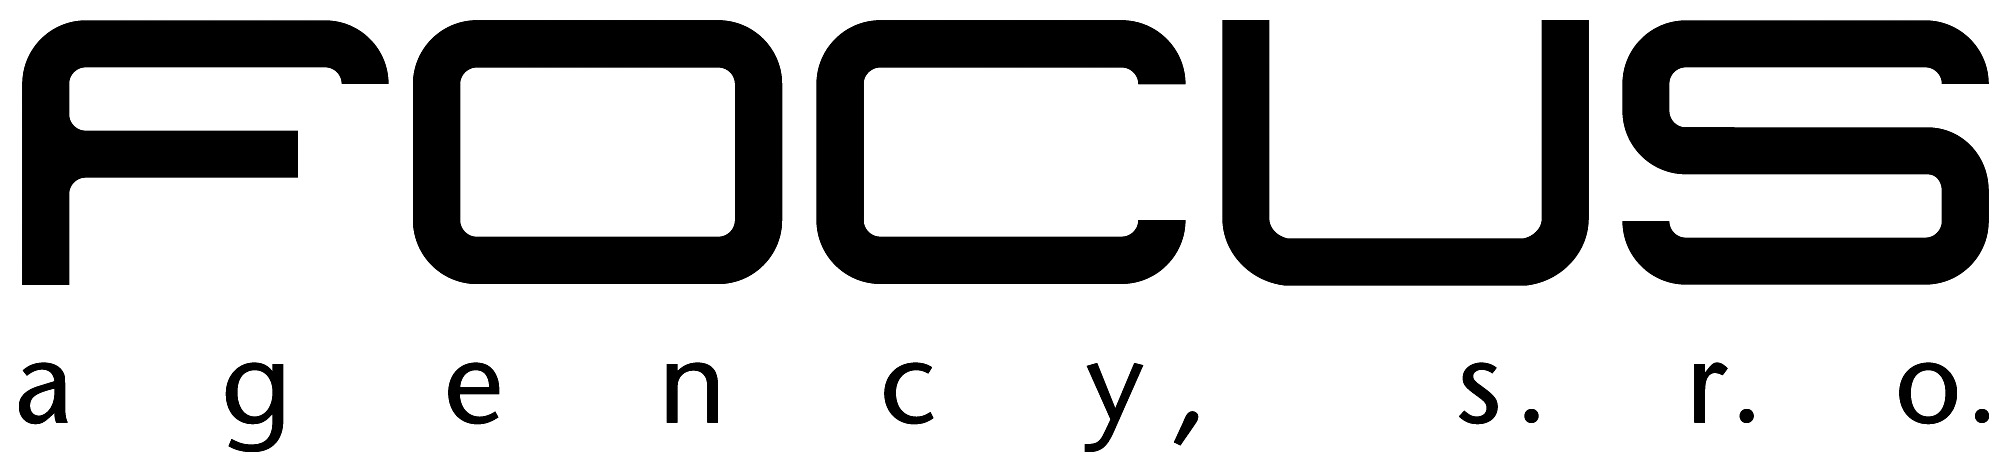 Focus_logo_2010